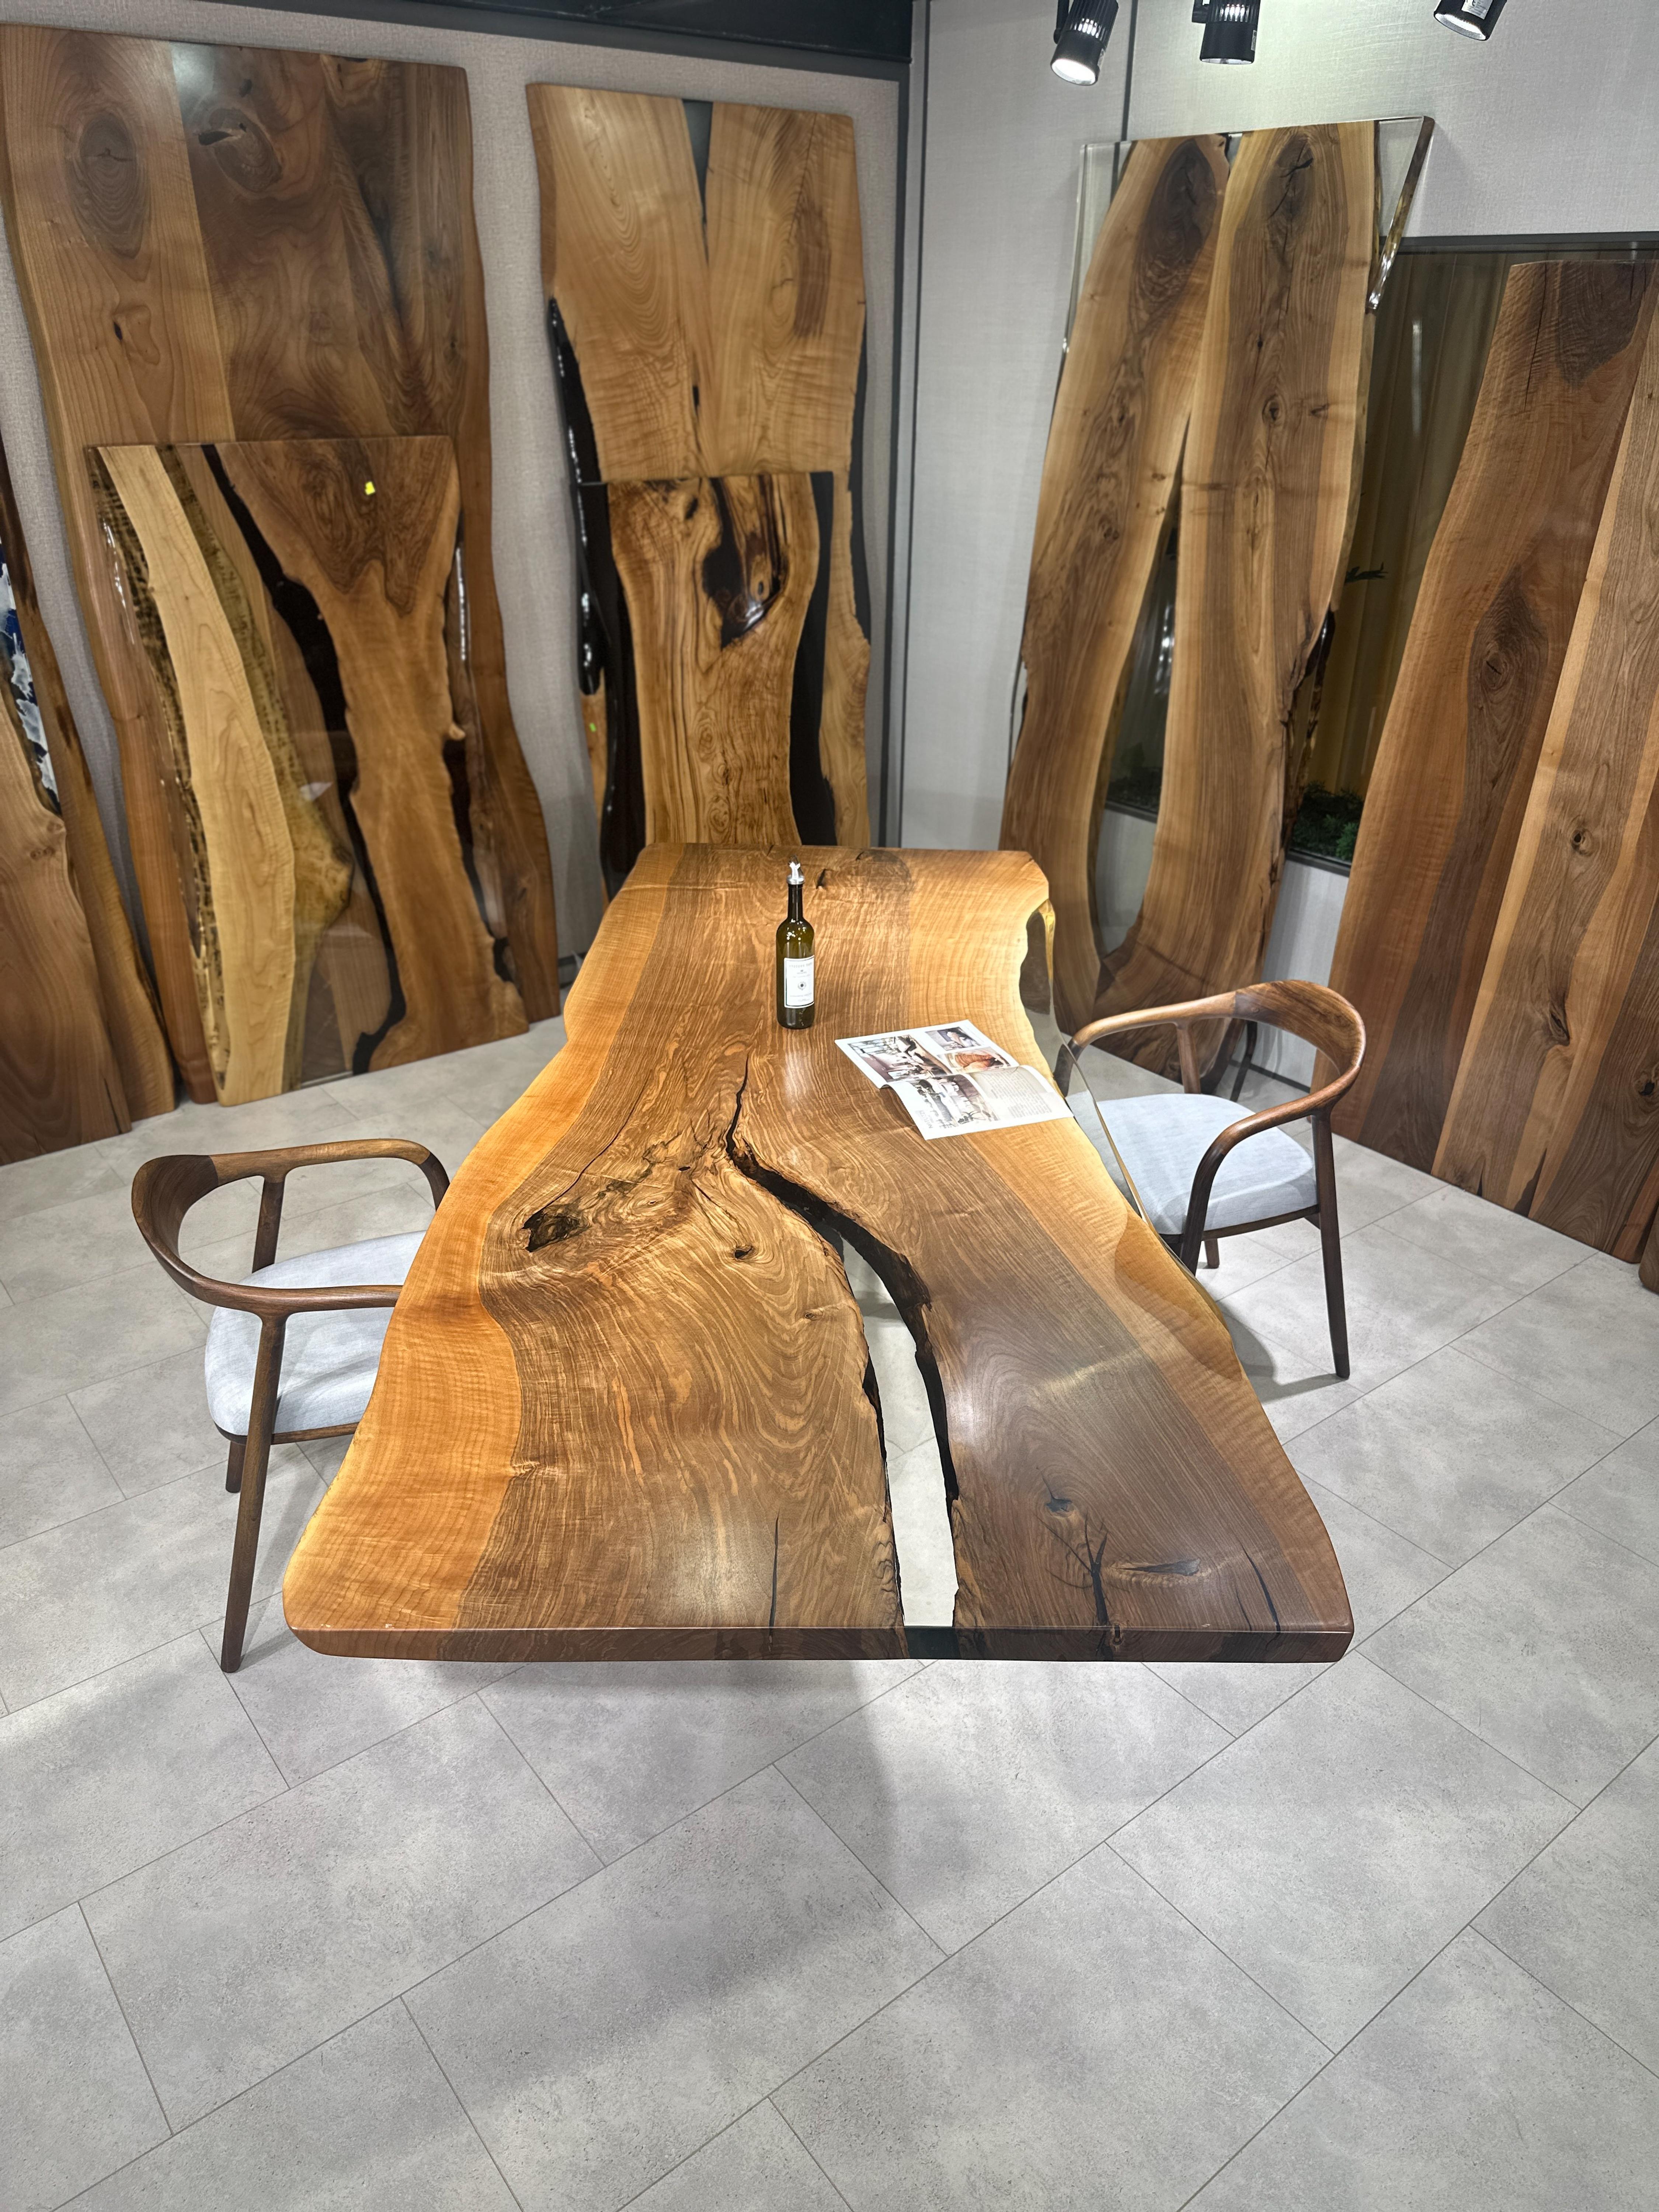 Nussbaum Custom Clear Epoxidharz Esstisch 

Dieser Tisch ist aus 500 Jahre altem Walnussholz gefertigt. Die Maserung und die Struktur des Holzes beschreiben, wie ein natürliches Walnussholz aussieht.
Er kann als Esstisch oder als Konferenztisch